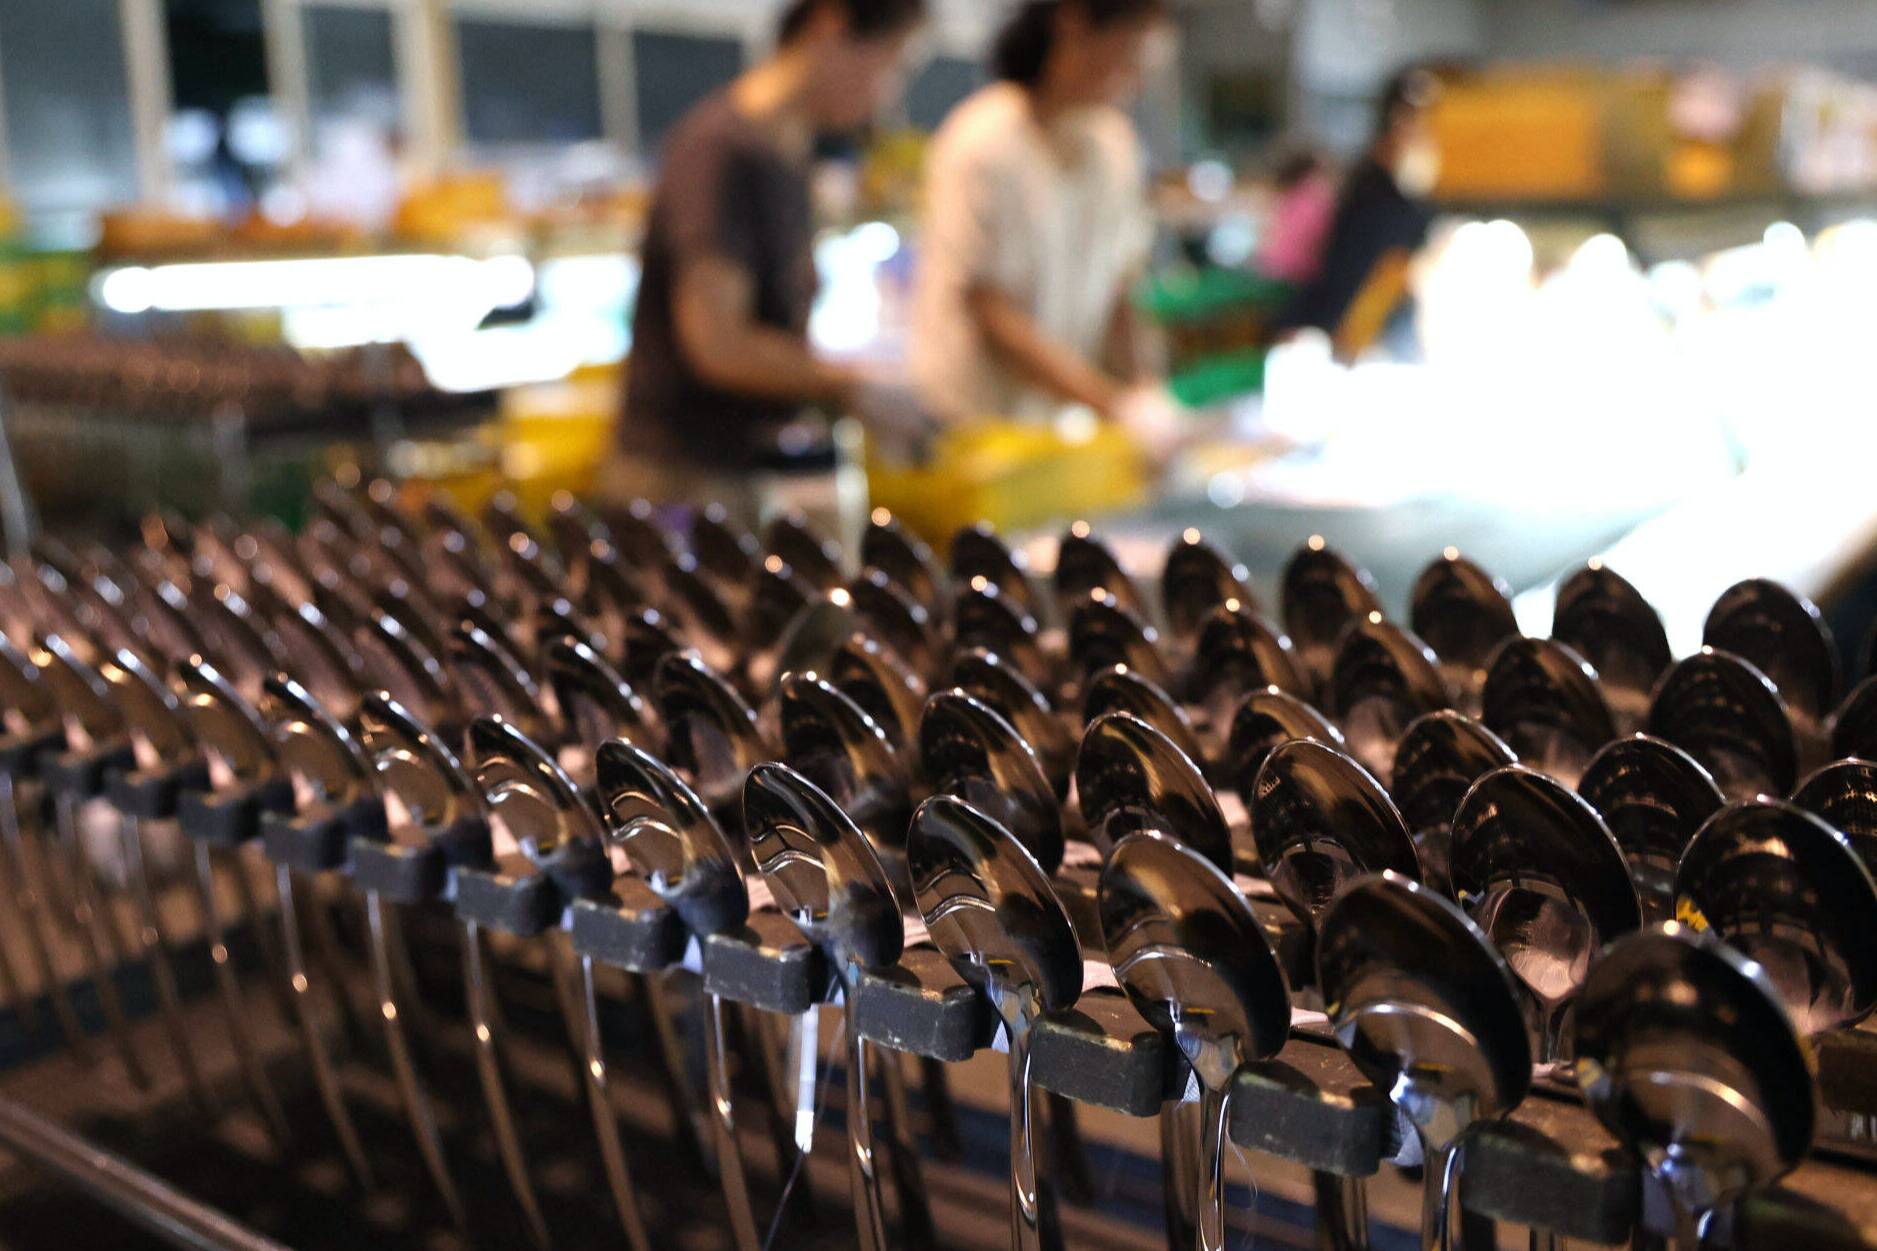 小餐具 大生意 滨州小镇生产餐具畅销30多个国家